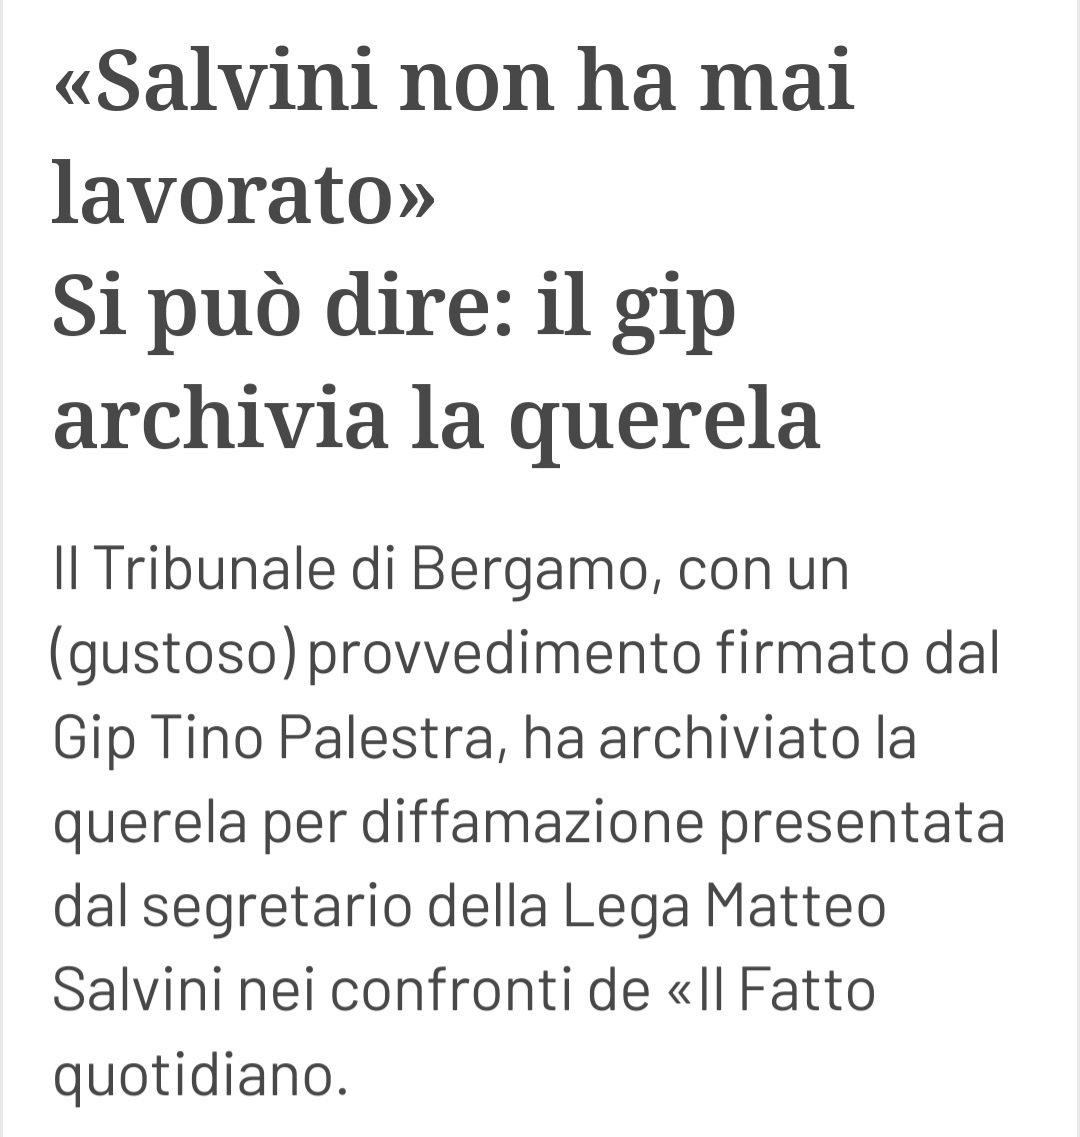 Nel giorno della festa dei lavoratori, desidero ricordare #Salvini, unico caso al mondo certificato da un provvedimento del Tribunale come fancazzista. 

#festadeilavoratori #FestadelLavoro #PrimoMaggio #1maggio